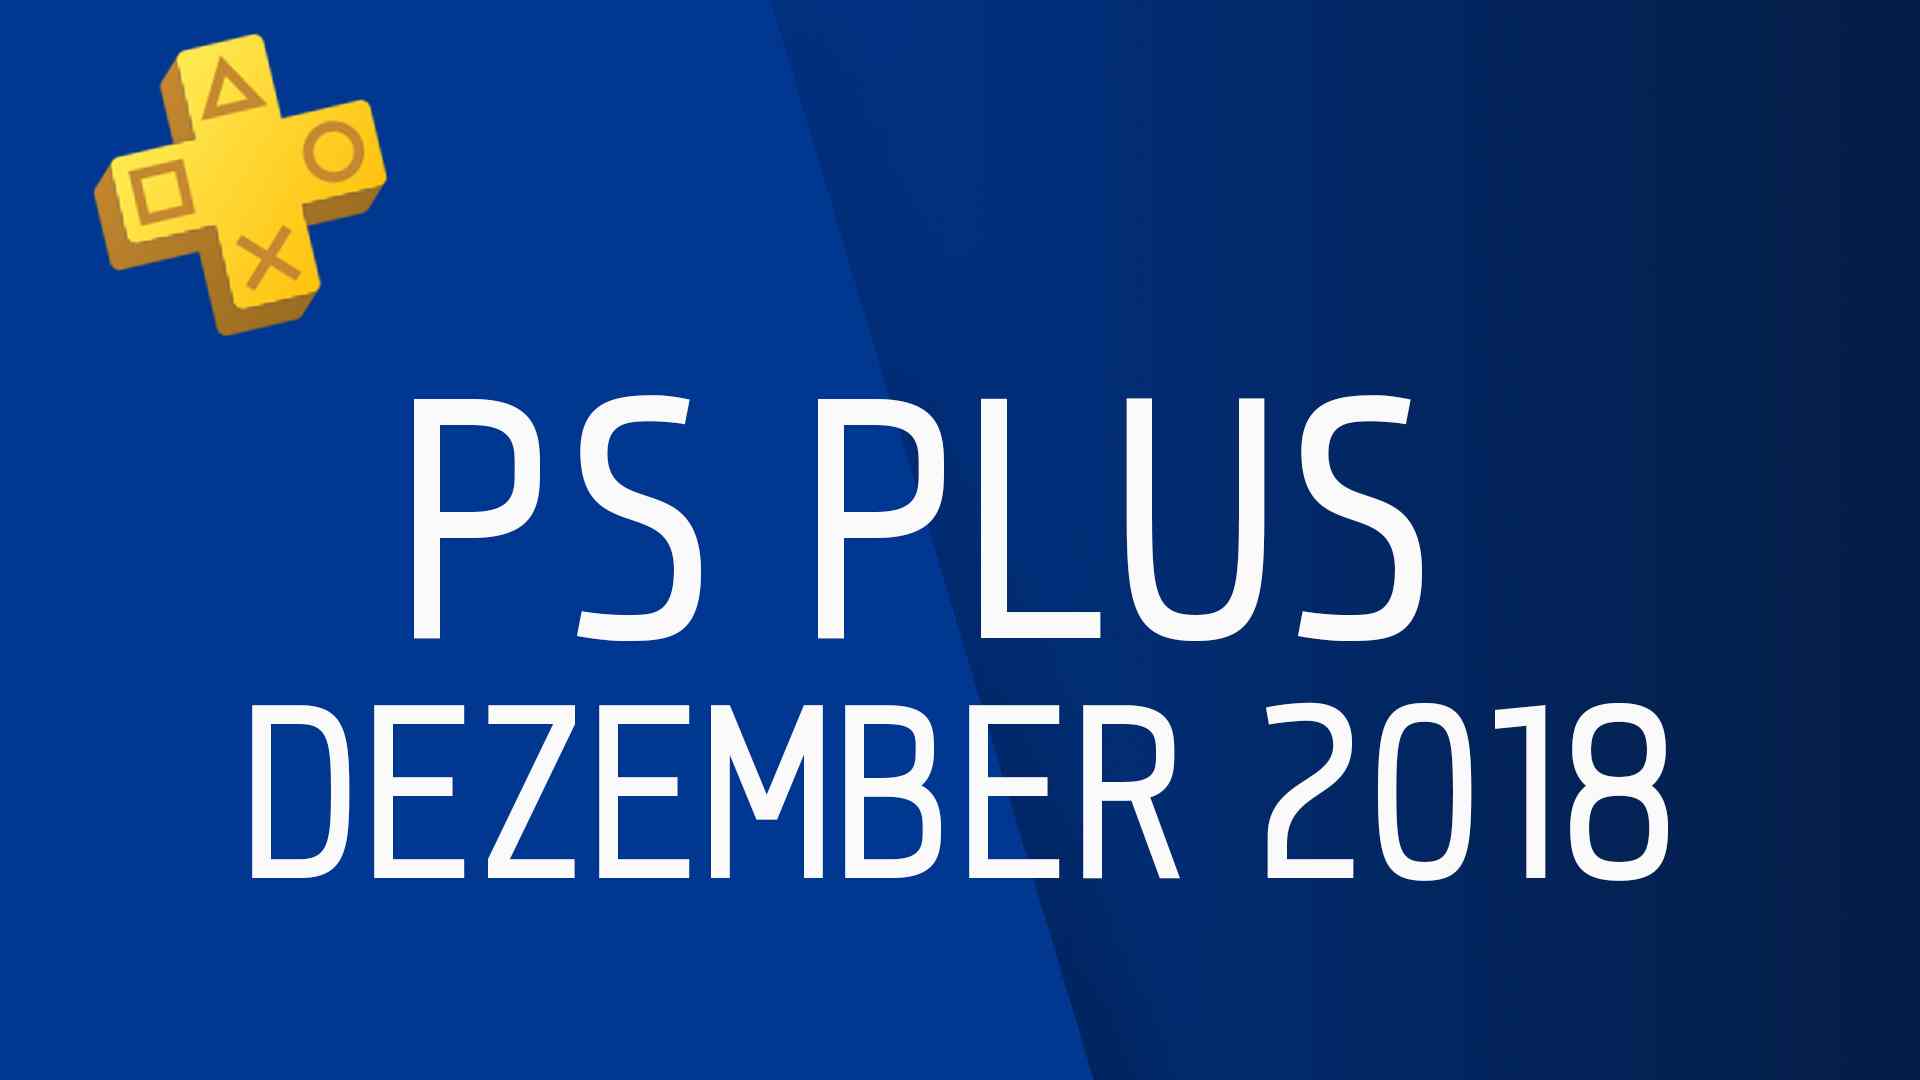 PS Plus Spiele im Dezember 2018